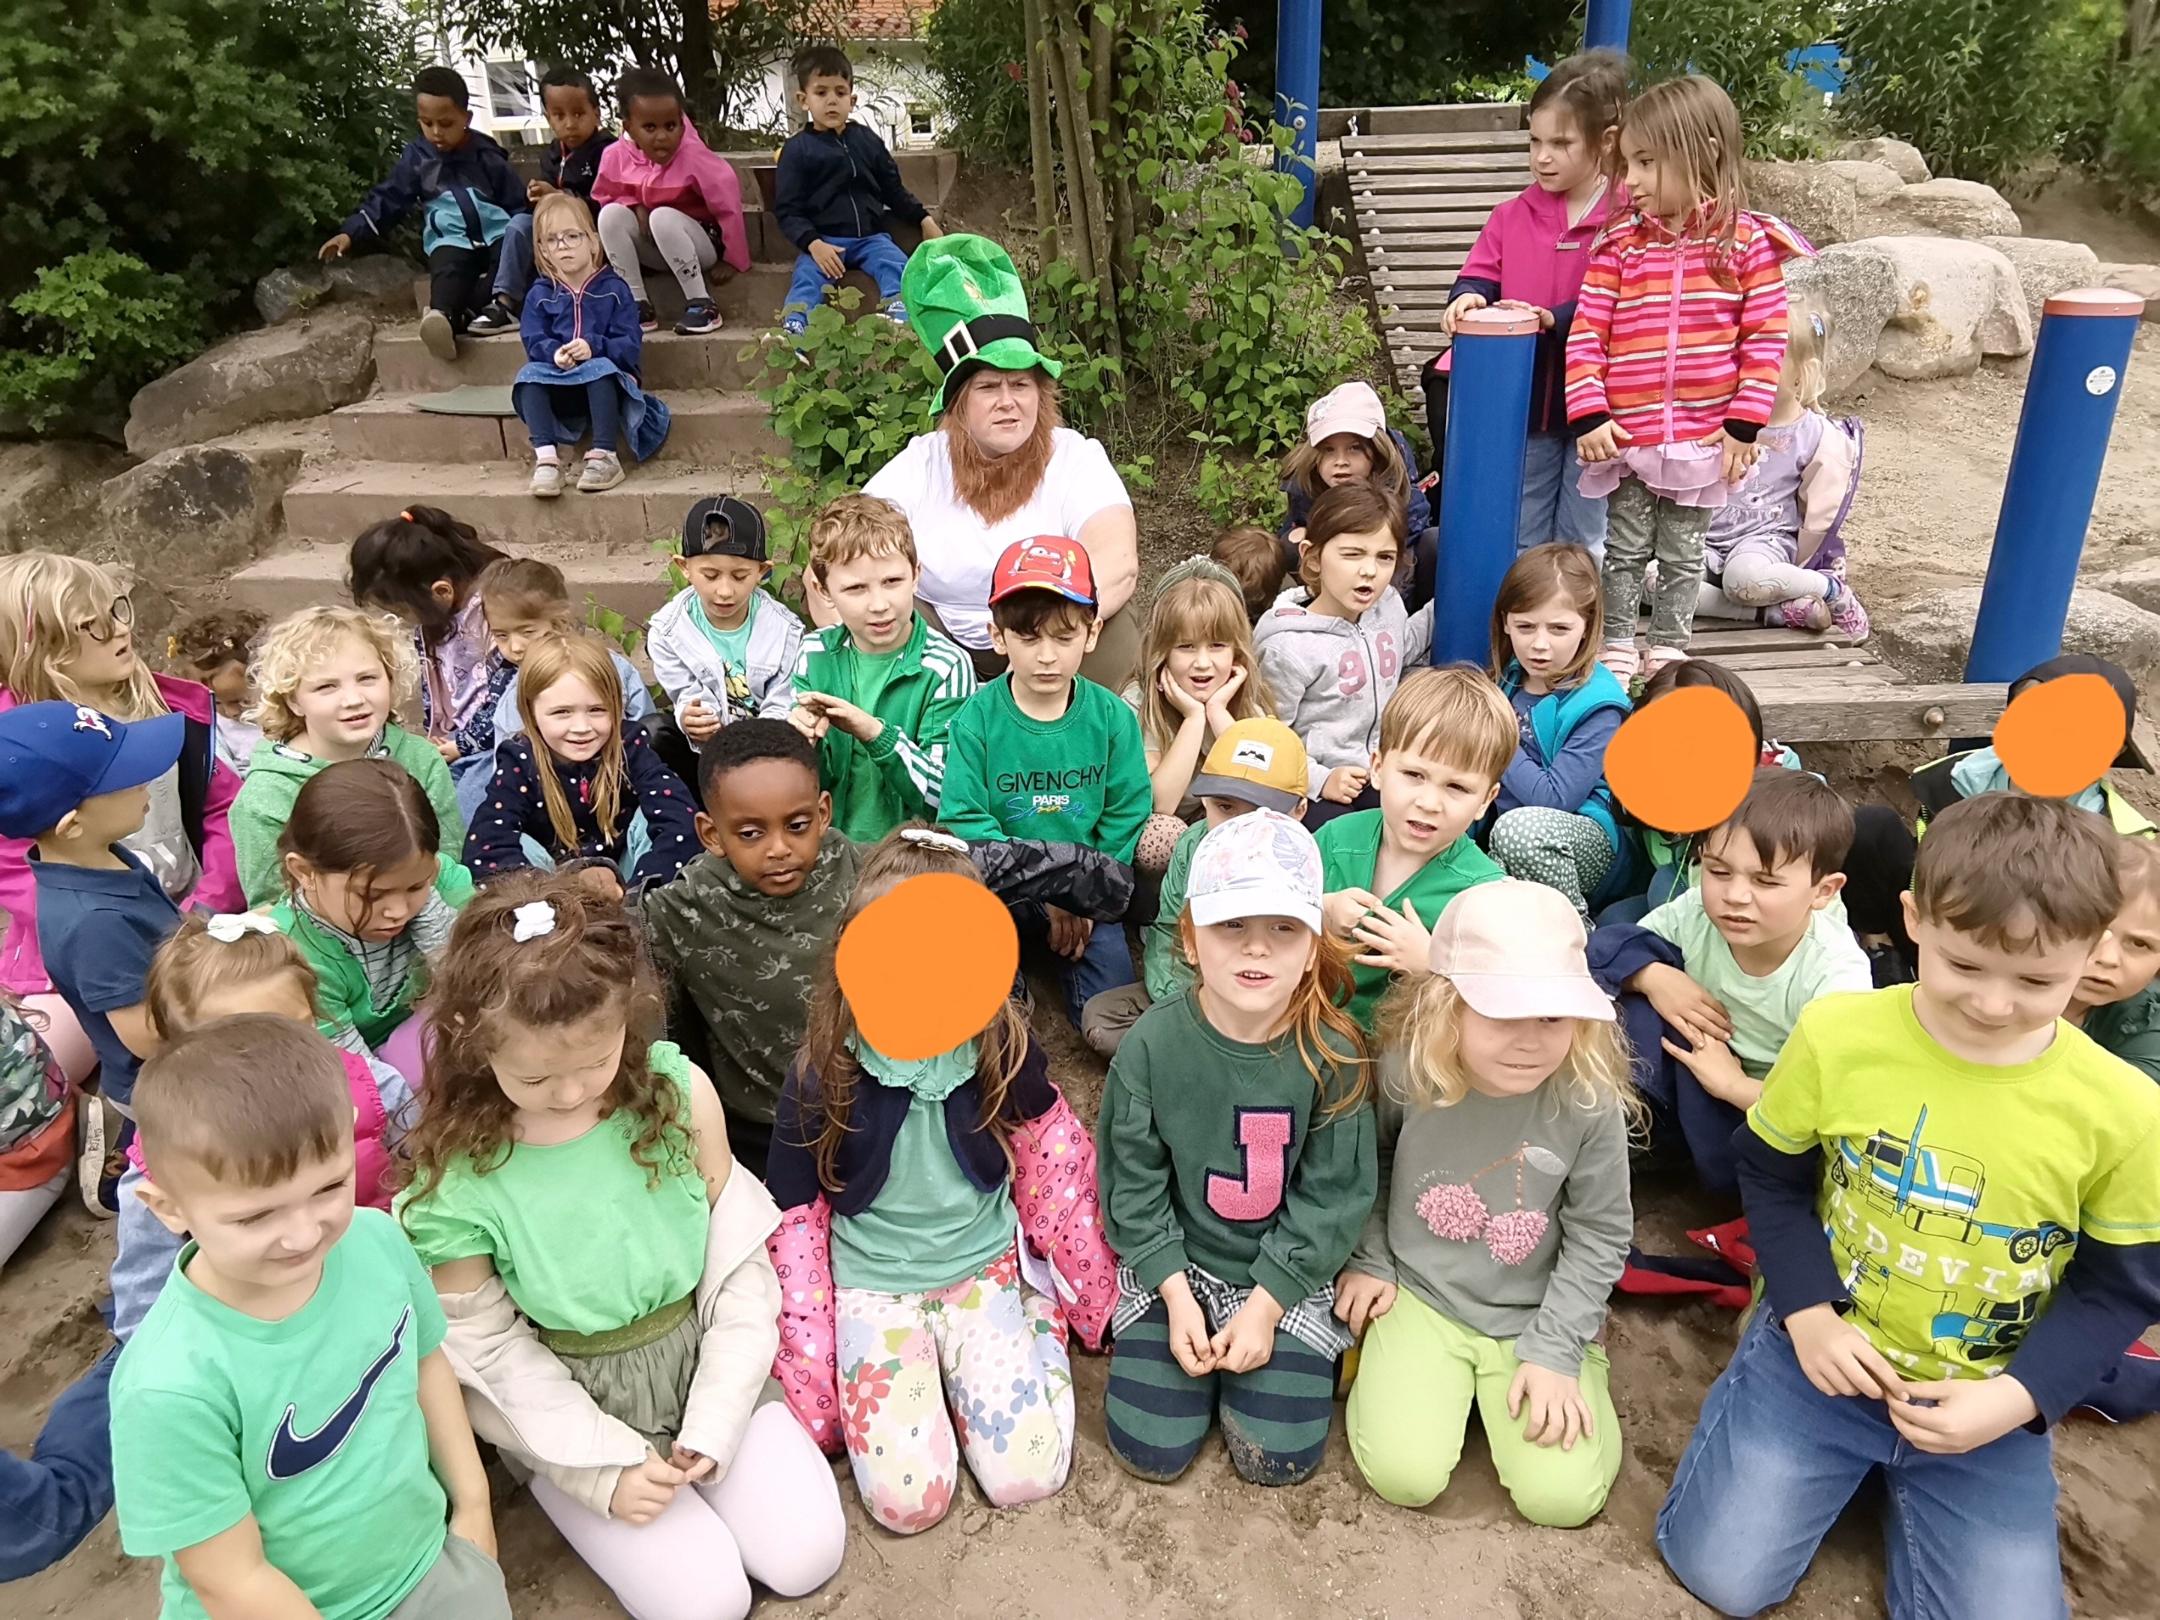 Viele Kinder kamen heute in grün, der Farbe Irlands.